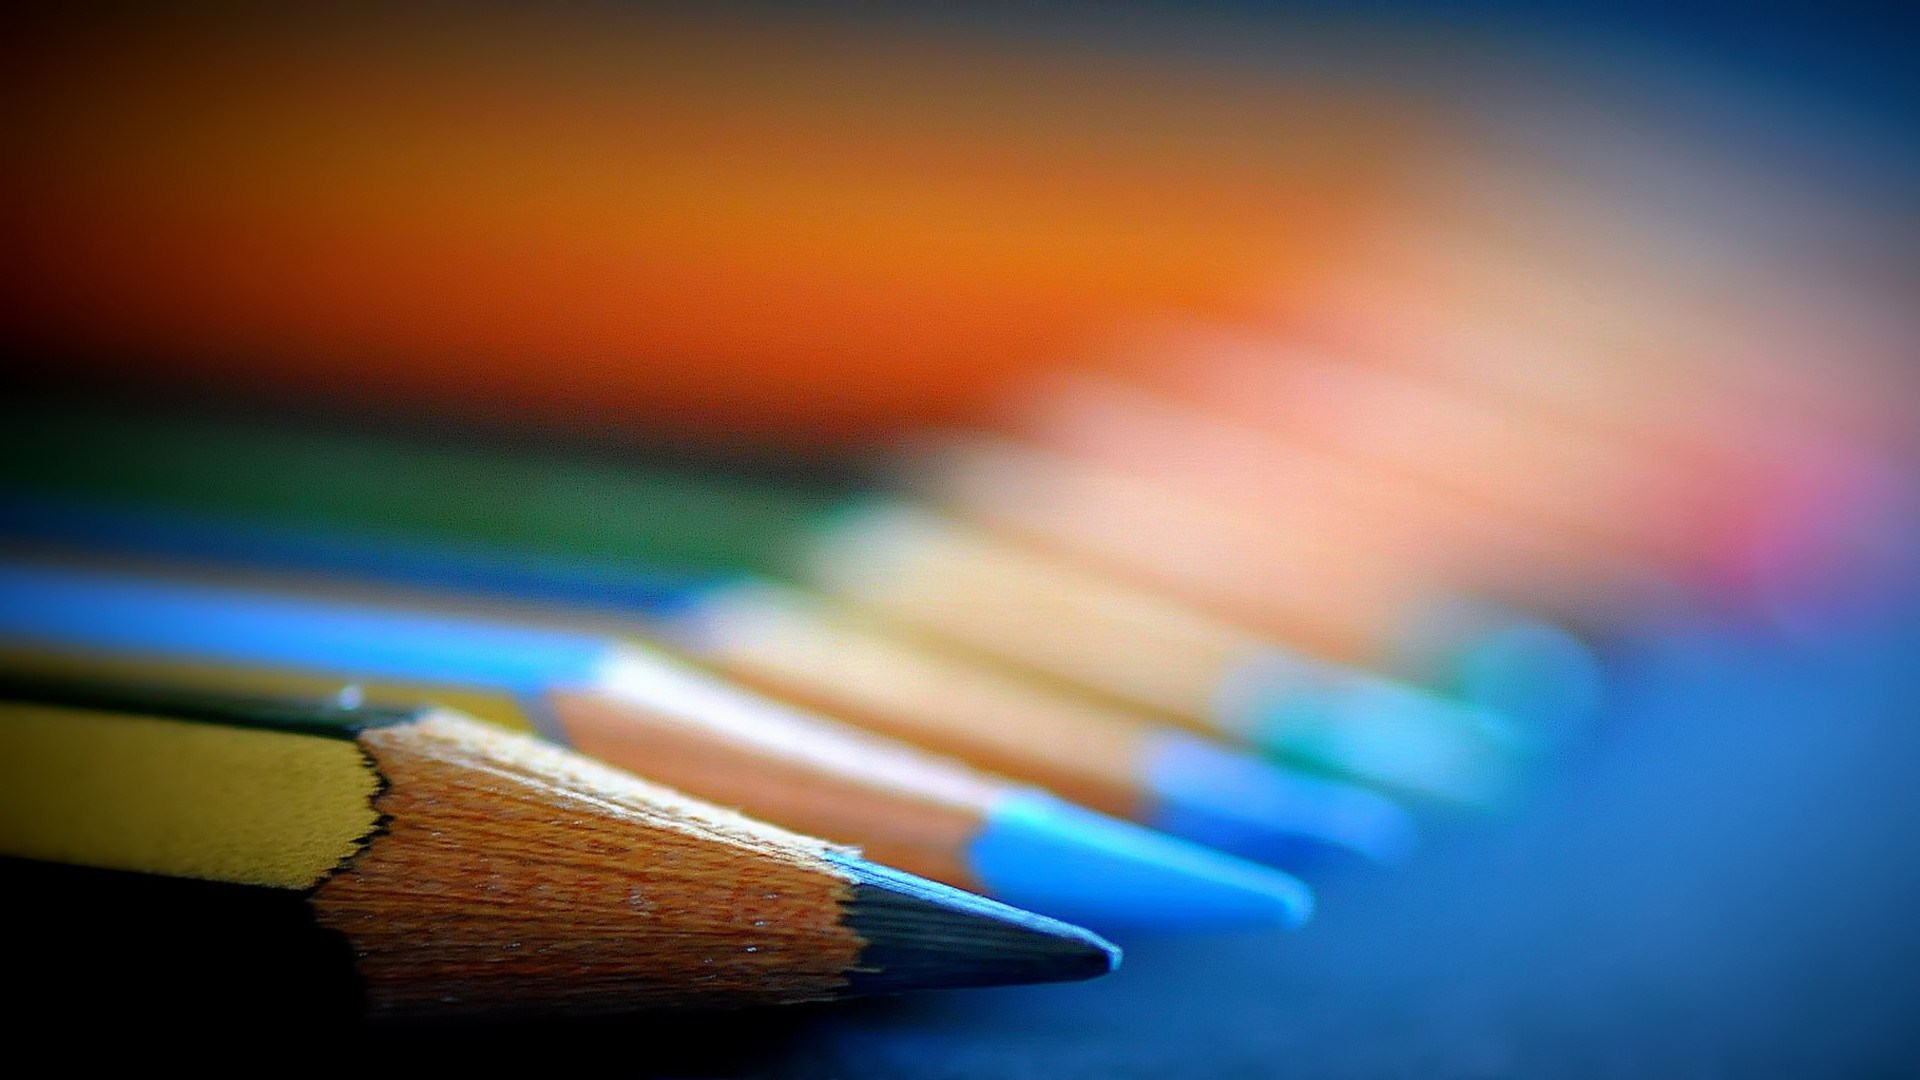 papel pintado a lápiz,lápiz,azul,colorido,material de oficina,implemento de escritura